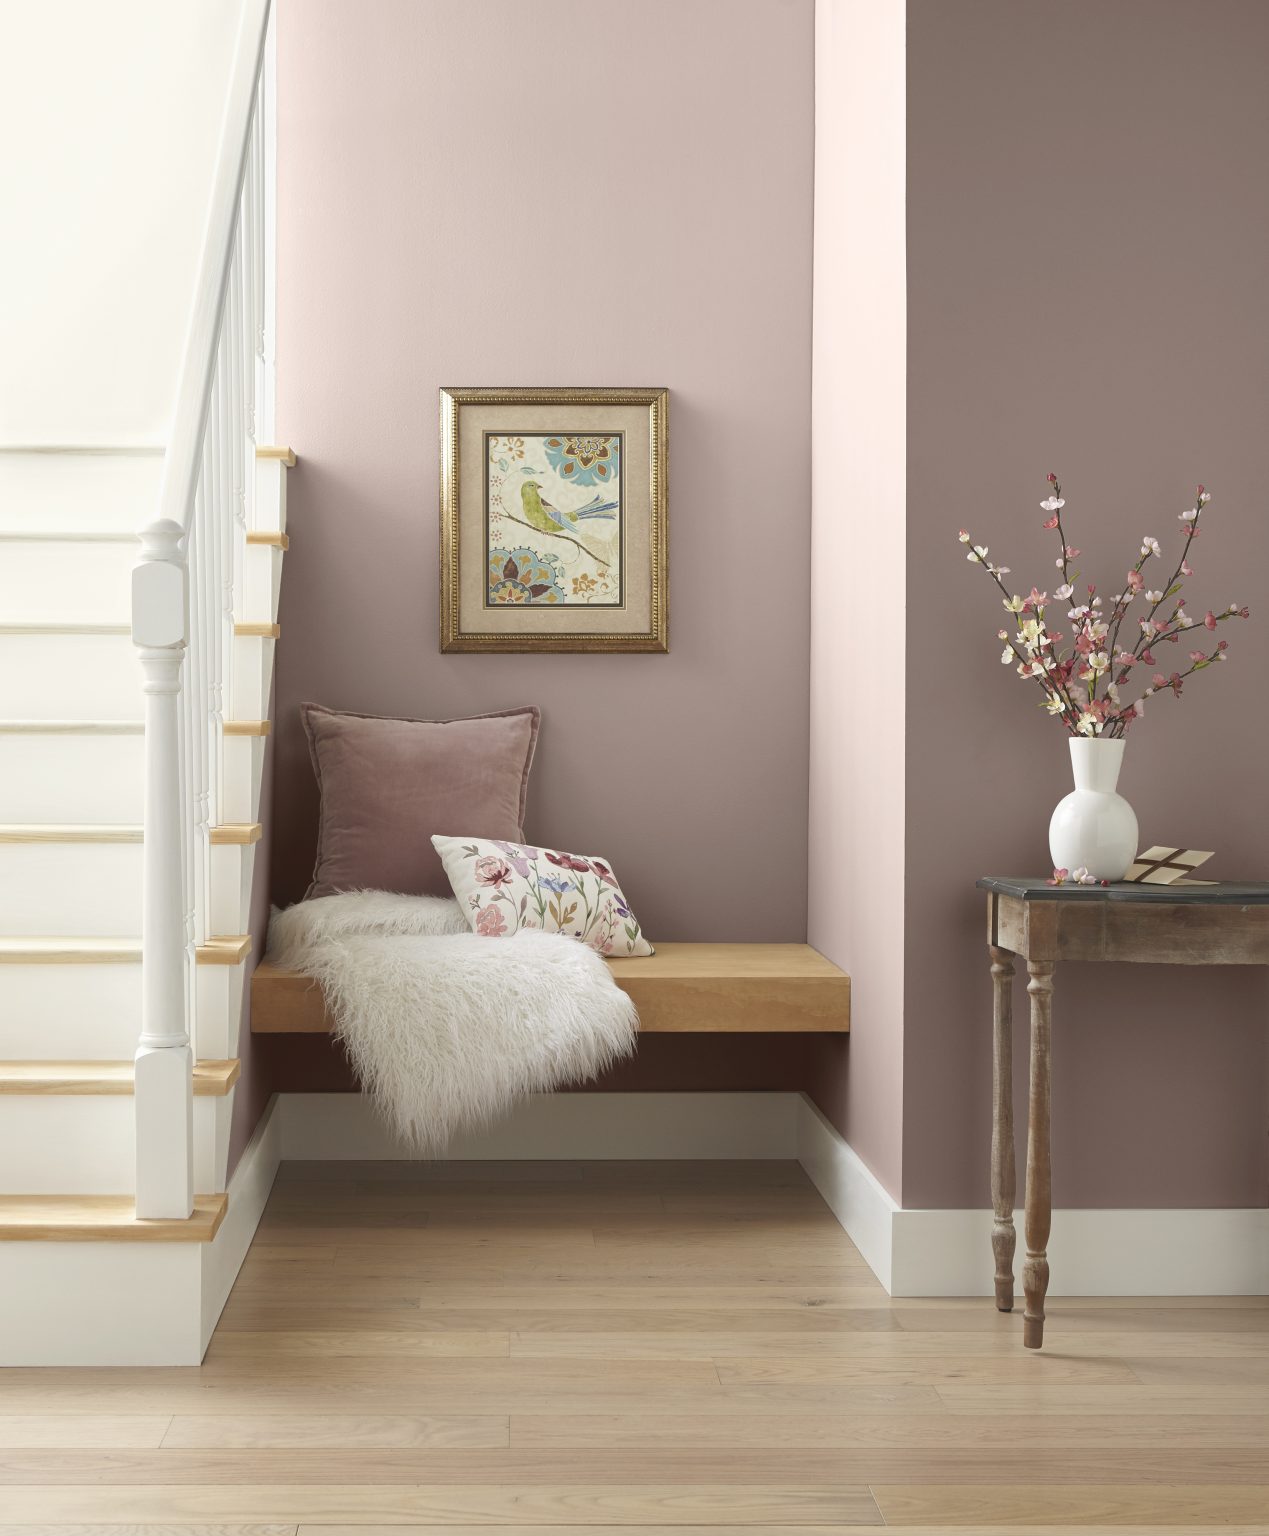 Un petit coin près de l'escalier avec des murs peints dans une couleur de rose poudreux, aménagé avec des meubles et un décor en teintes neutres